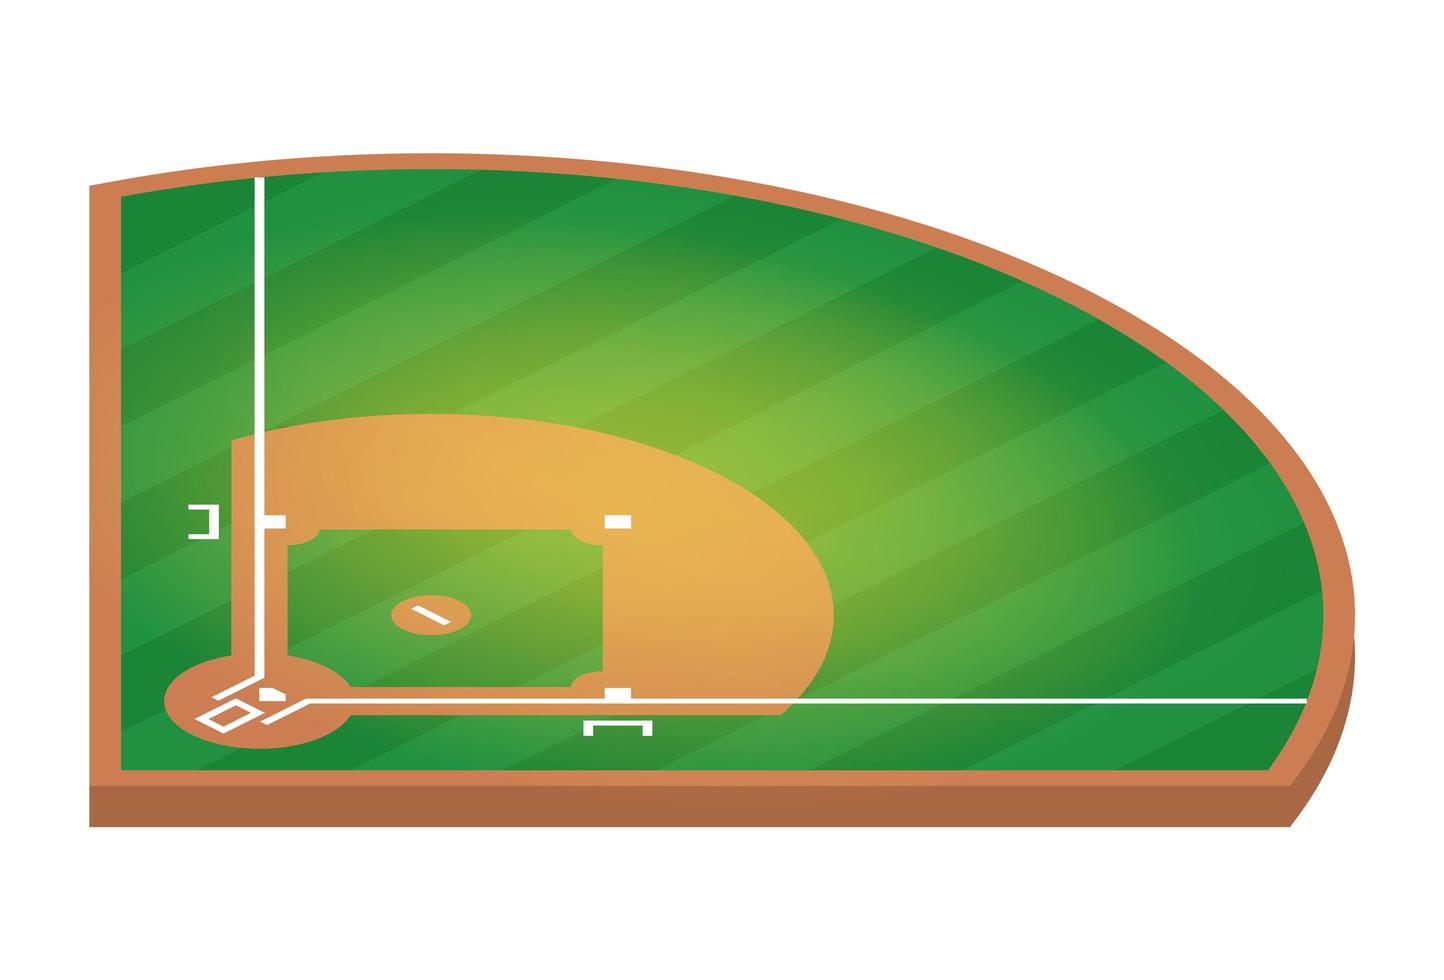 campo de béisbol isométrico. Ilustración plana del diseño del vector del campo de béisbol.